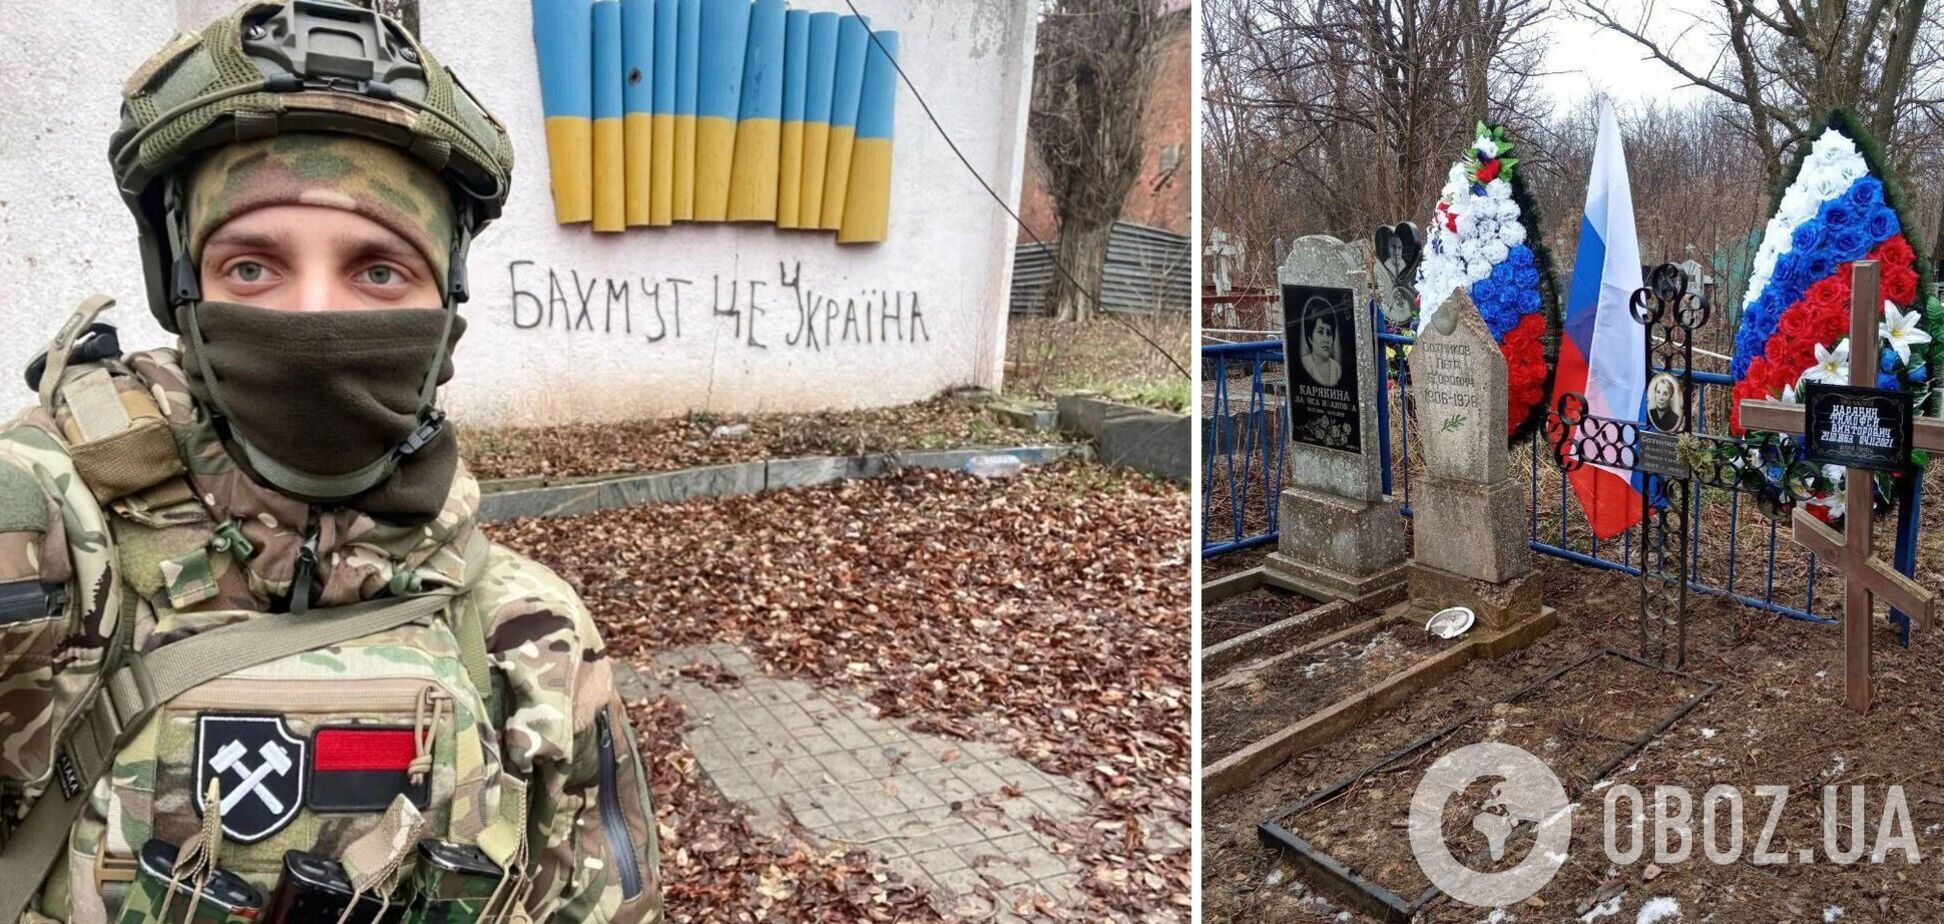 В Кадиевке предатели осквернили могилу родных украинского воина. Фото